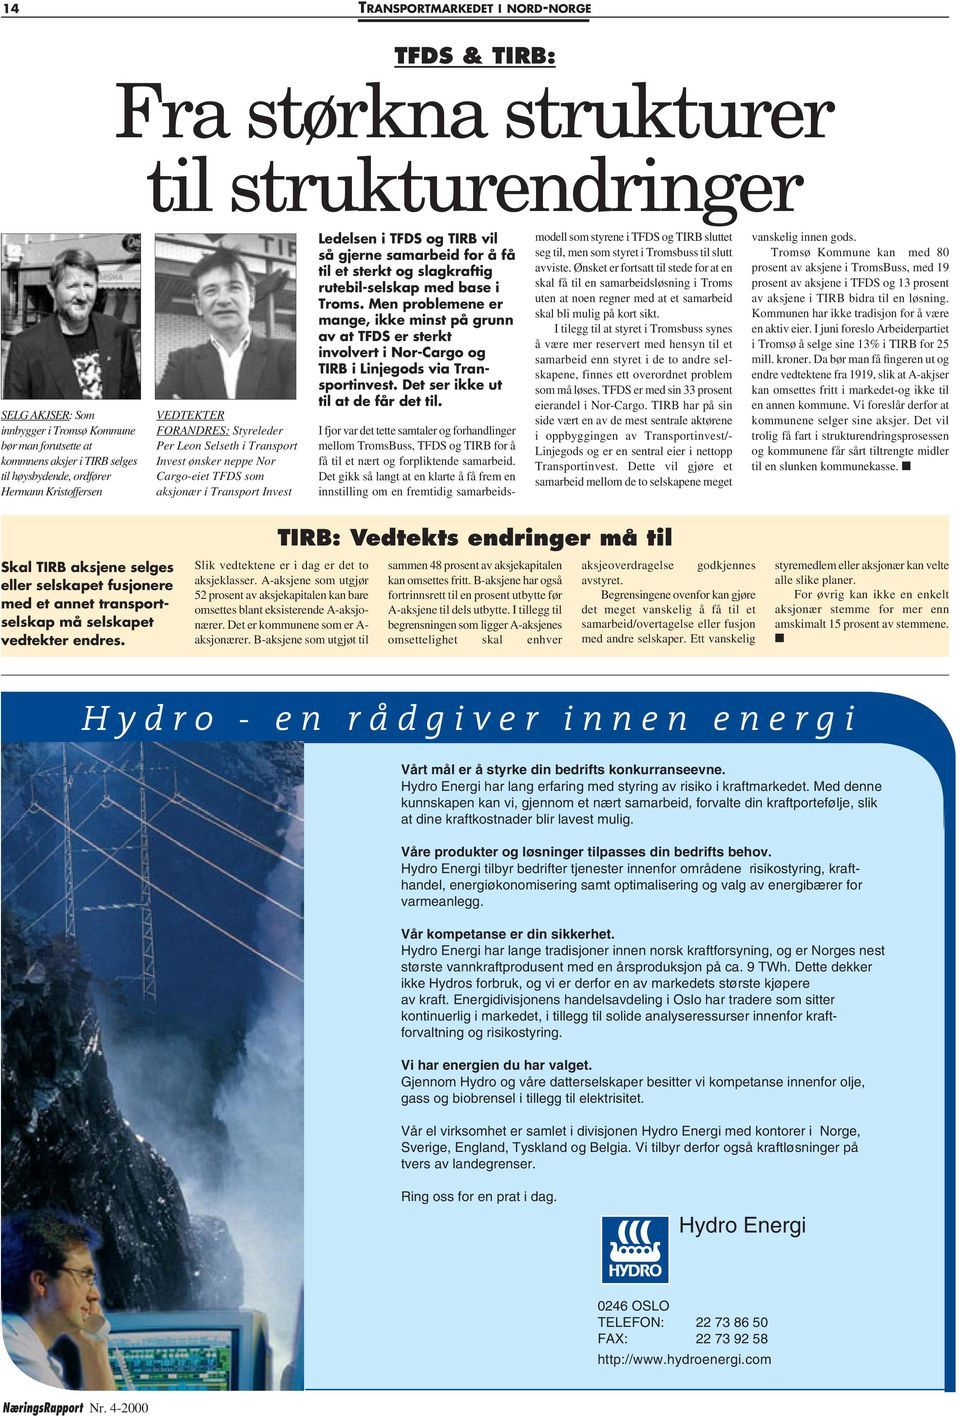 TIRB vil så gjerne samarbeid for å få til et sterkt og slagkraftig rutebil-selskap med base i Troms.